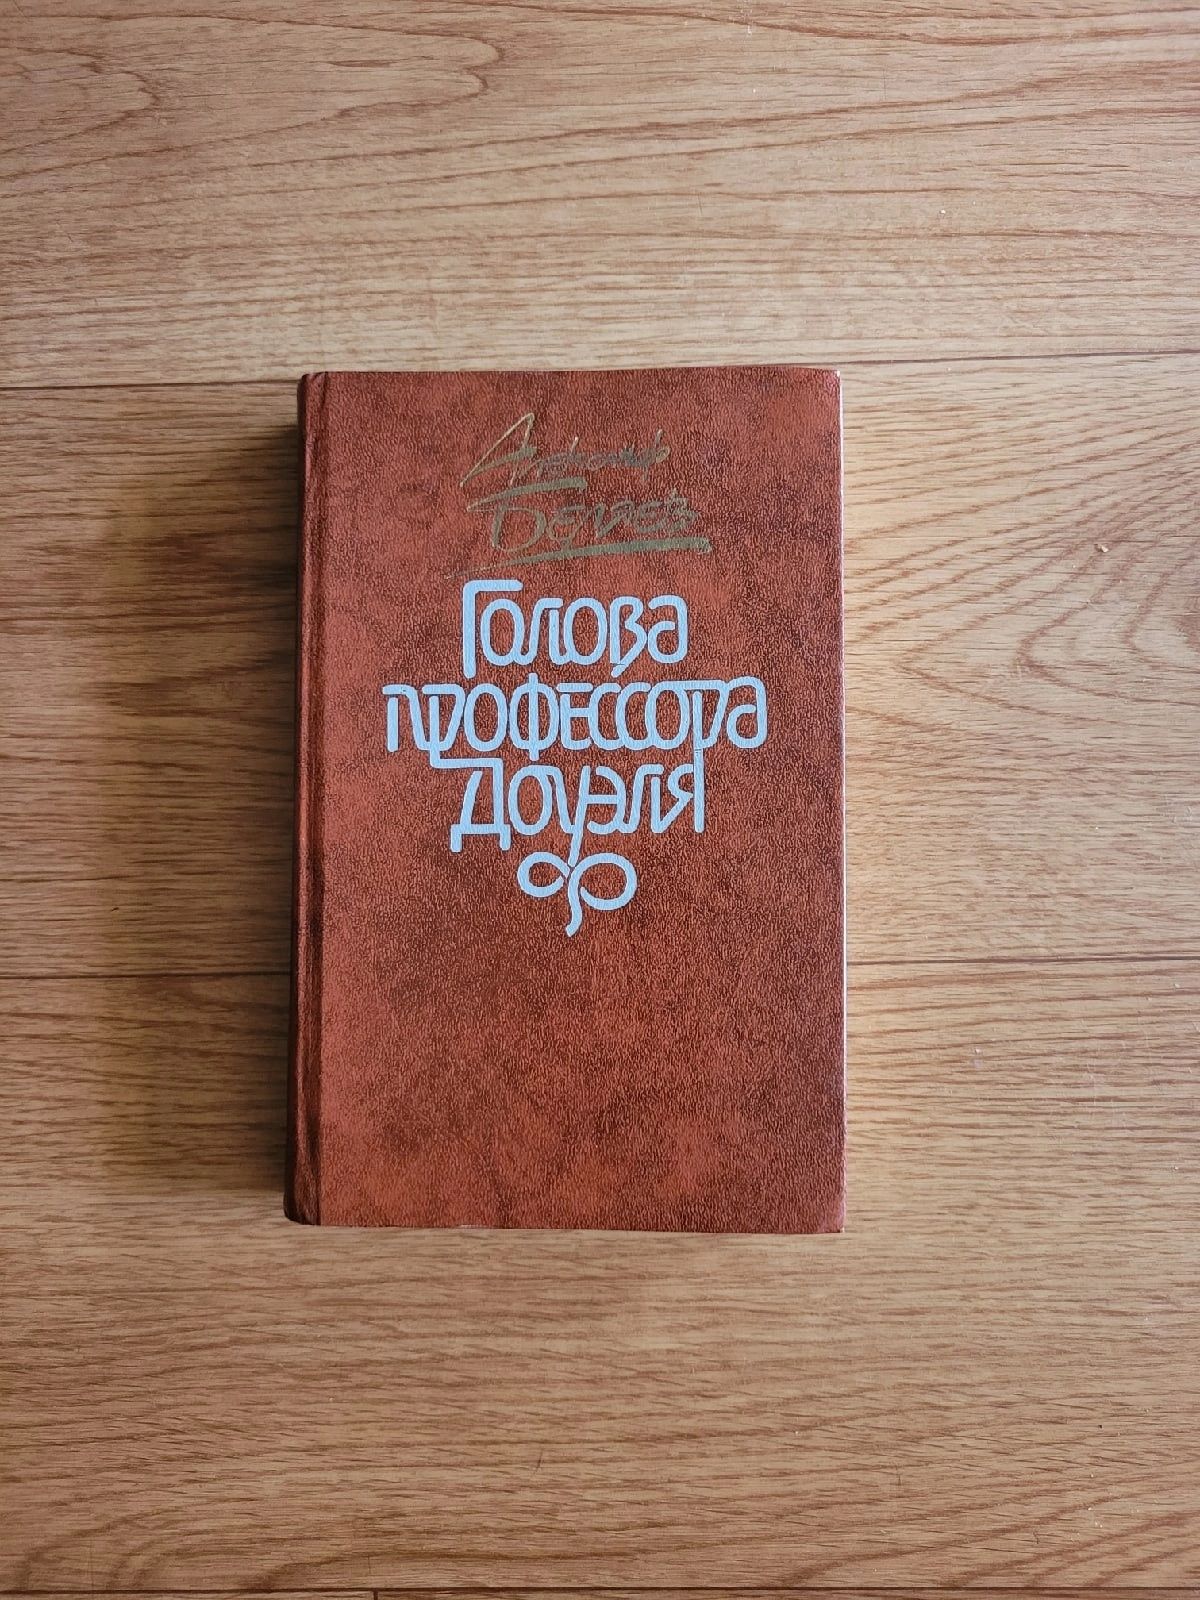 Книги разные времён СССР